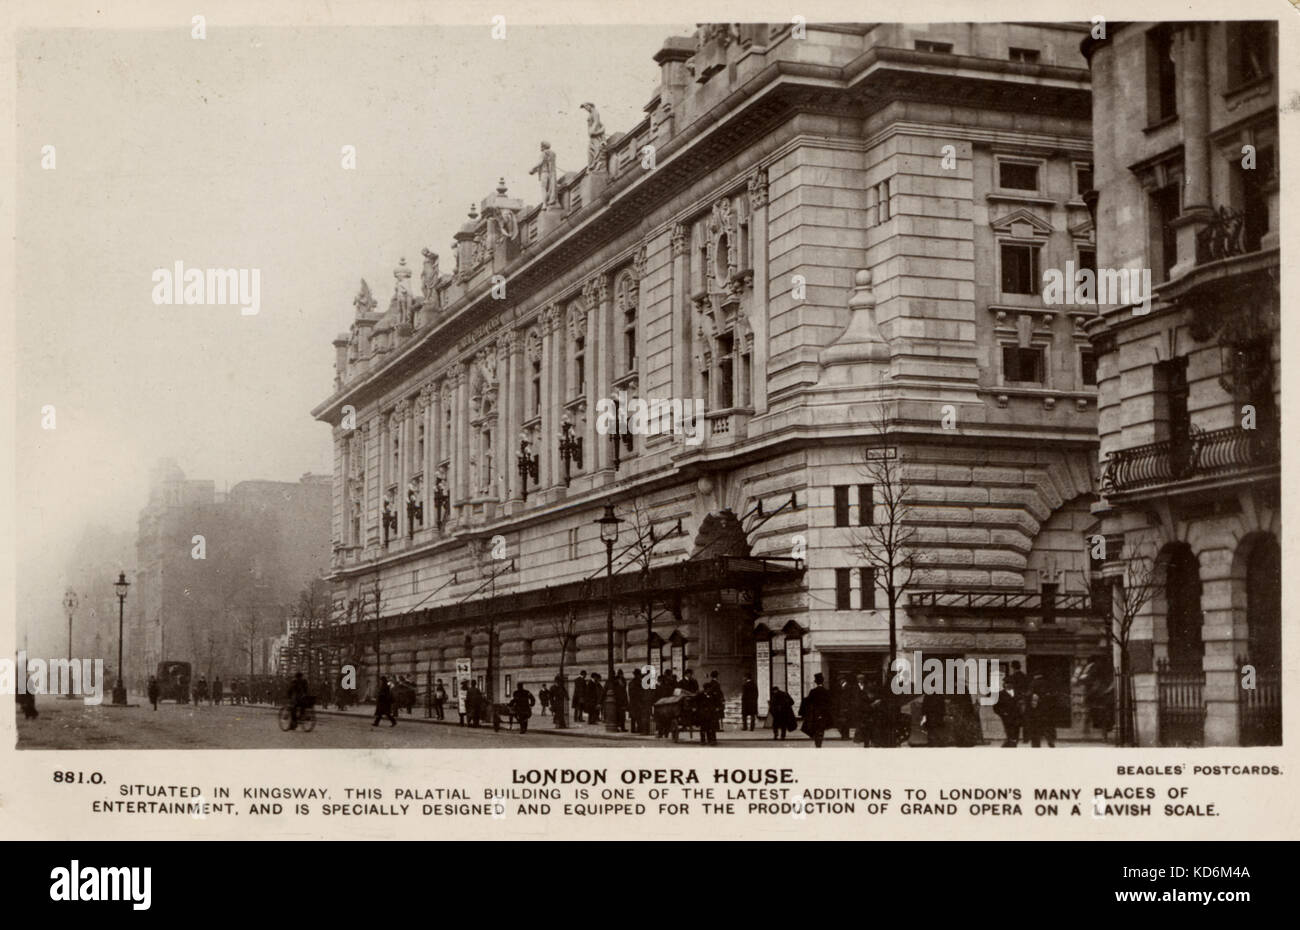 Vue extérieure Opera House de Londres dans Kingsway. Carte postale pré Première Guerre mondiale. Carte postale Beagles Banque D'Images